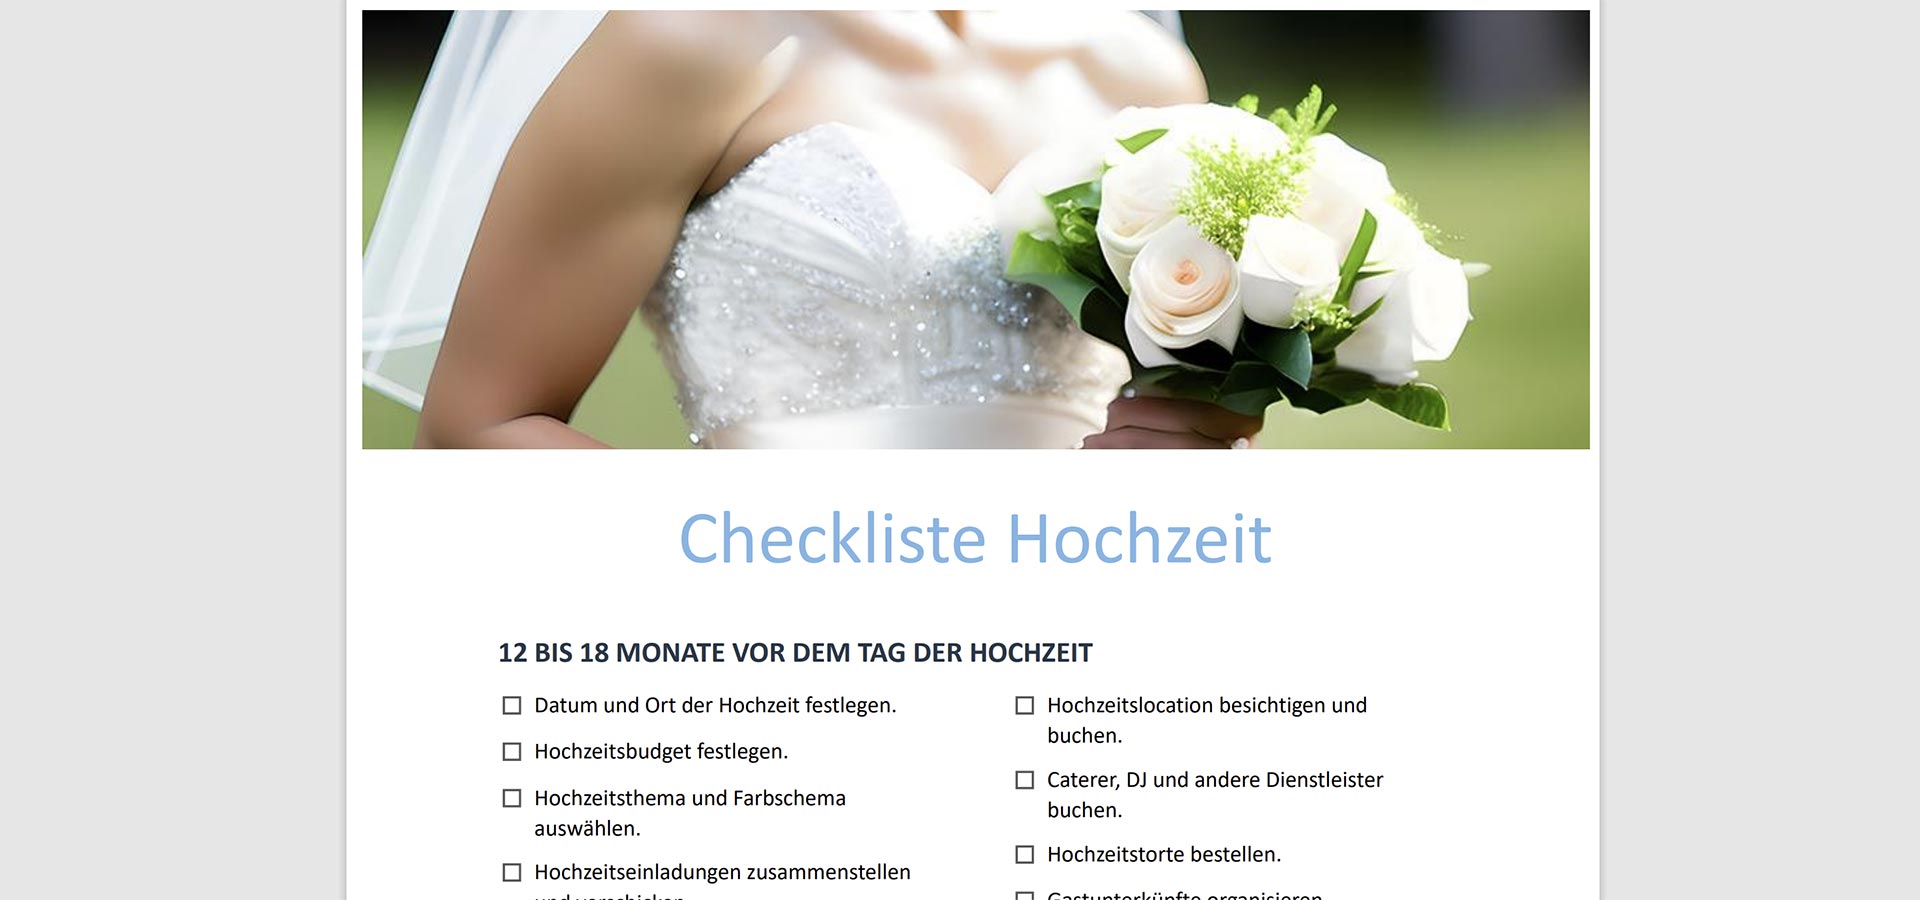 Checkliste Hochzeit PDF